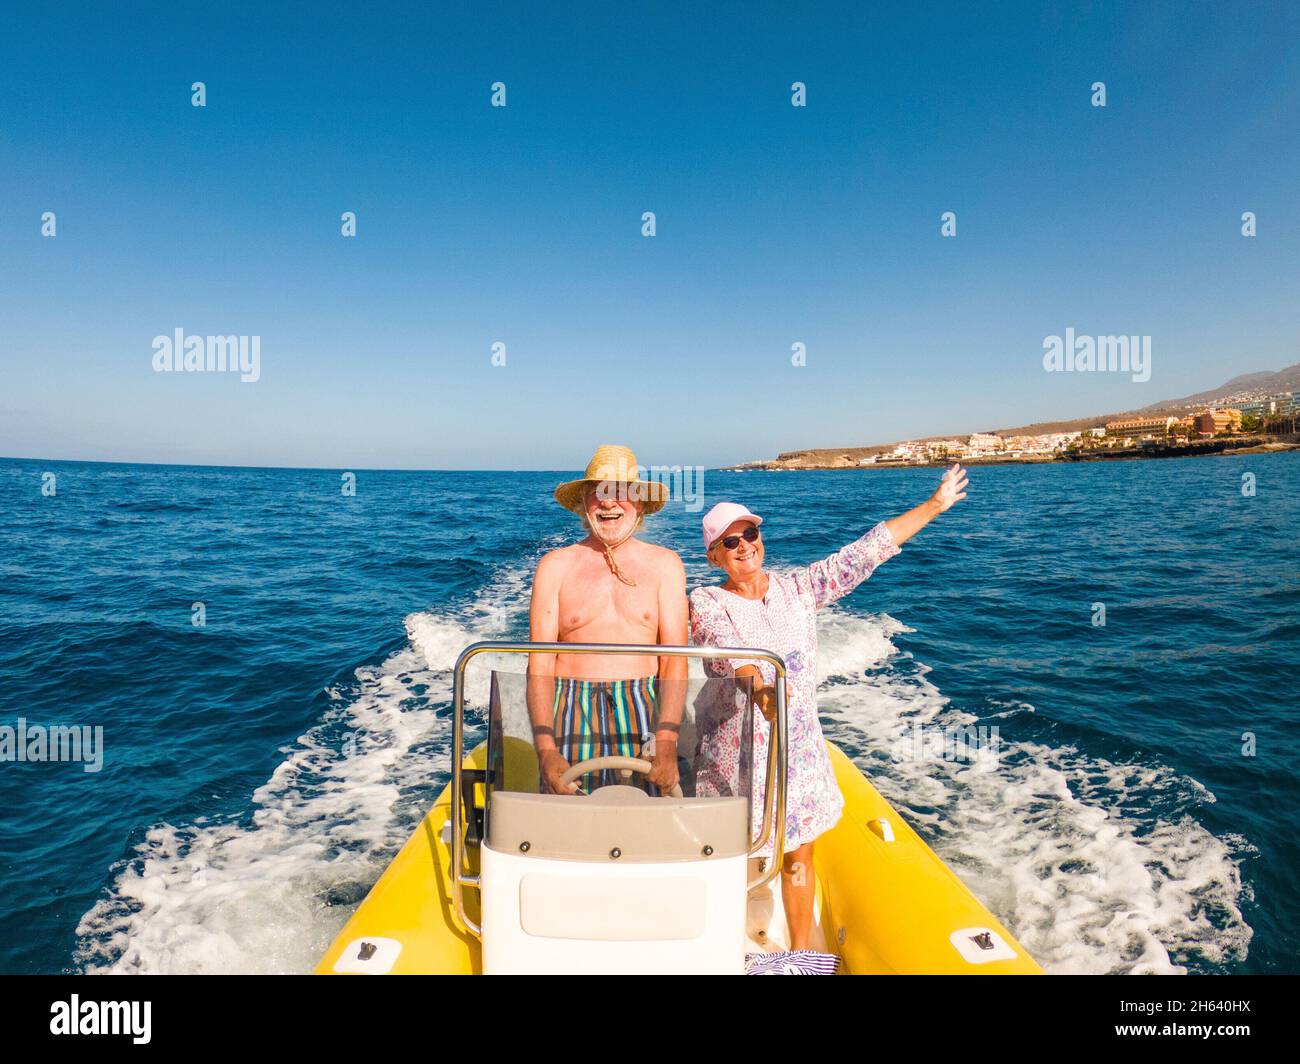 Schöne und niedliche paar Senioren oder alte Menschen in der Mitte des Meeres fahren und entdecken Sie neue Orte mit kleinen Boot. Reife Frau hält ein Telefon und ein Selfie mit HEW Ehemann Stockfoto